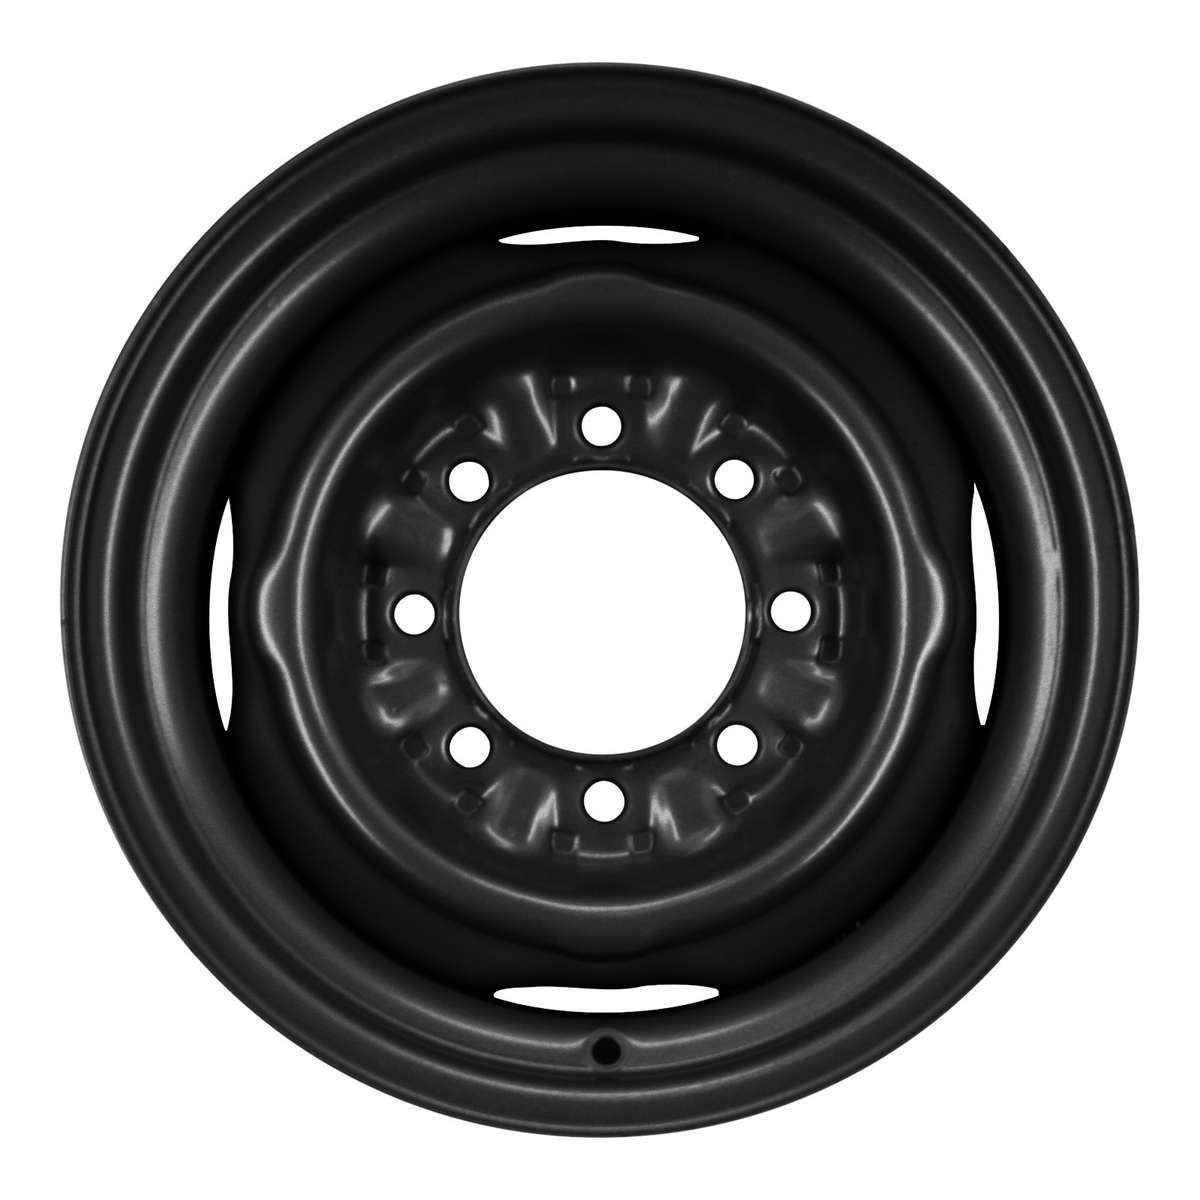 2014 Ford E350 16" OEM Wheel Rim W3035B